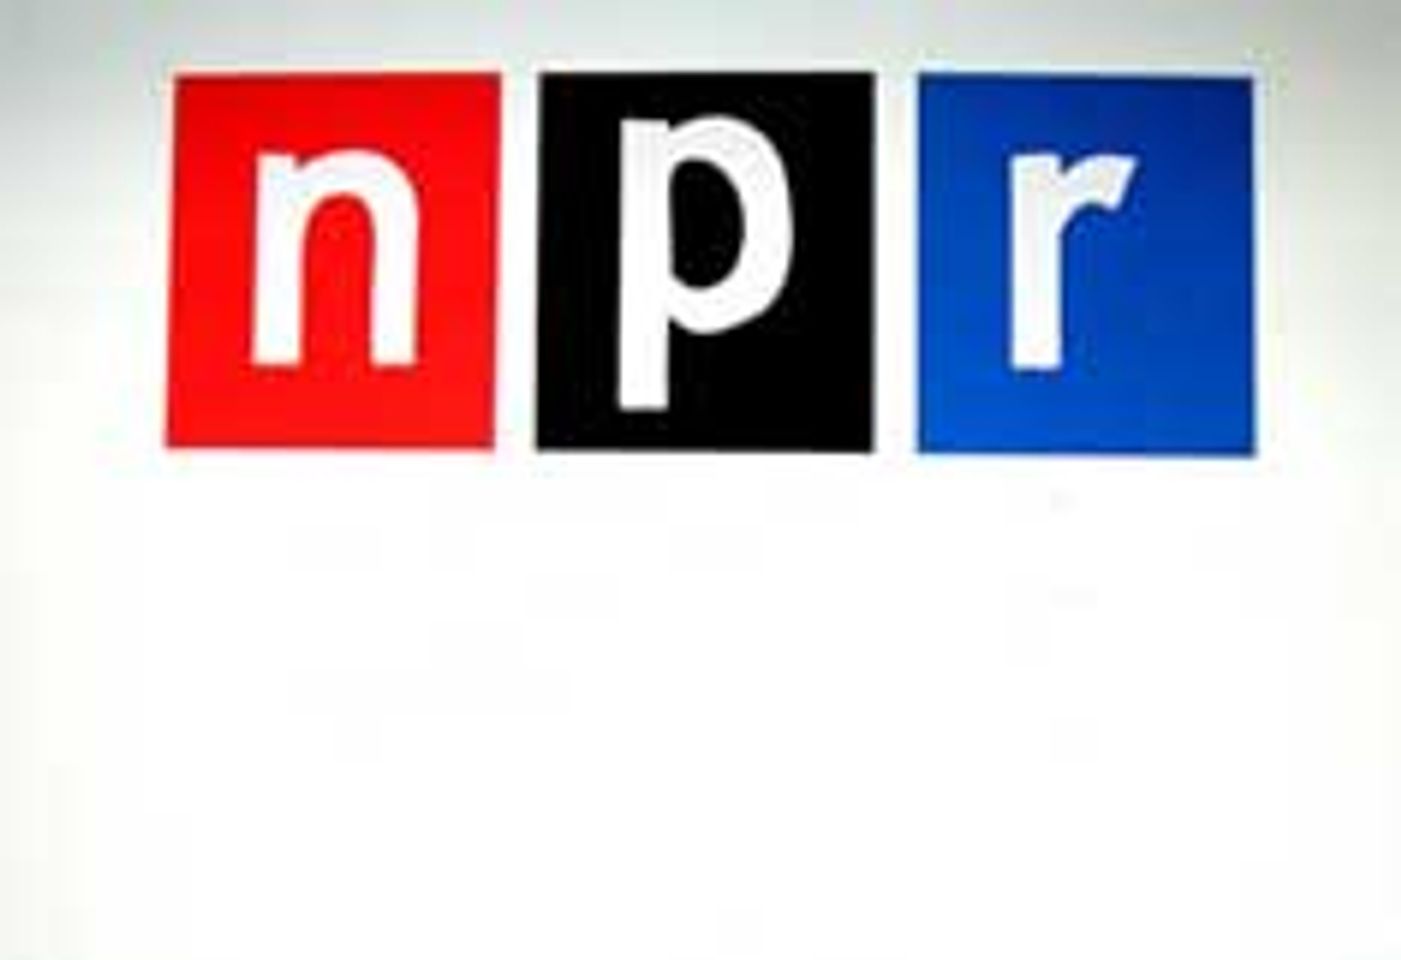 AVN's Mark Kernes Gets Supersized On NPR